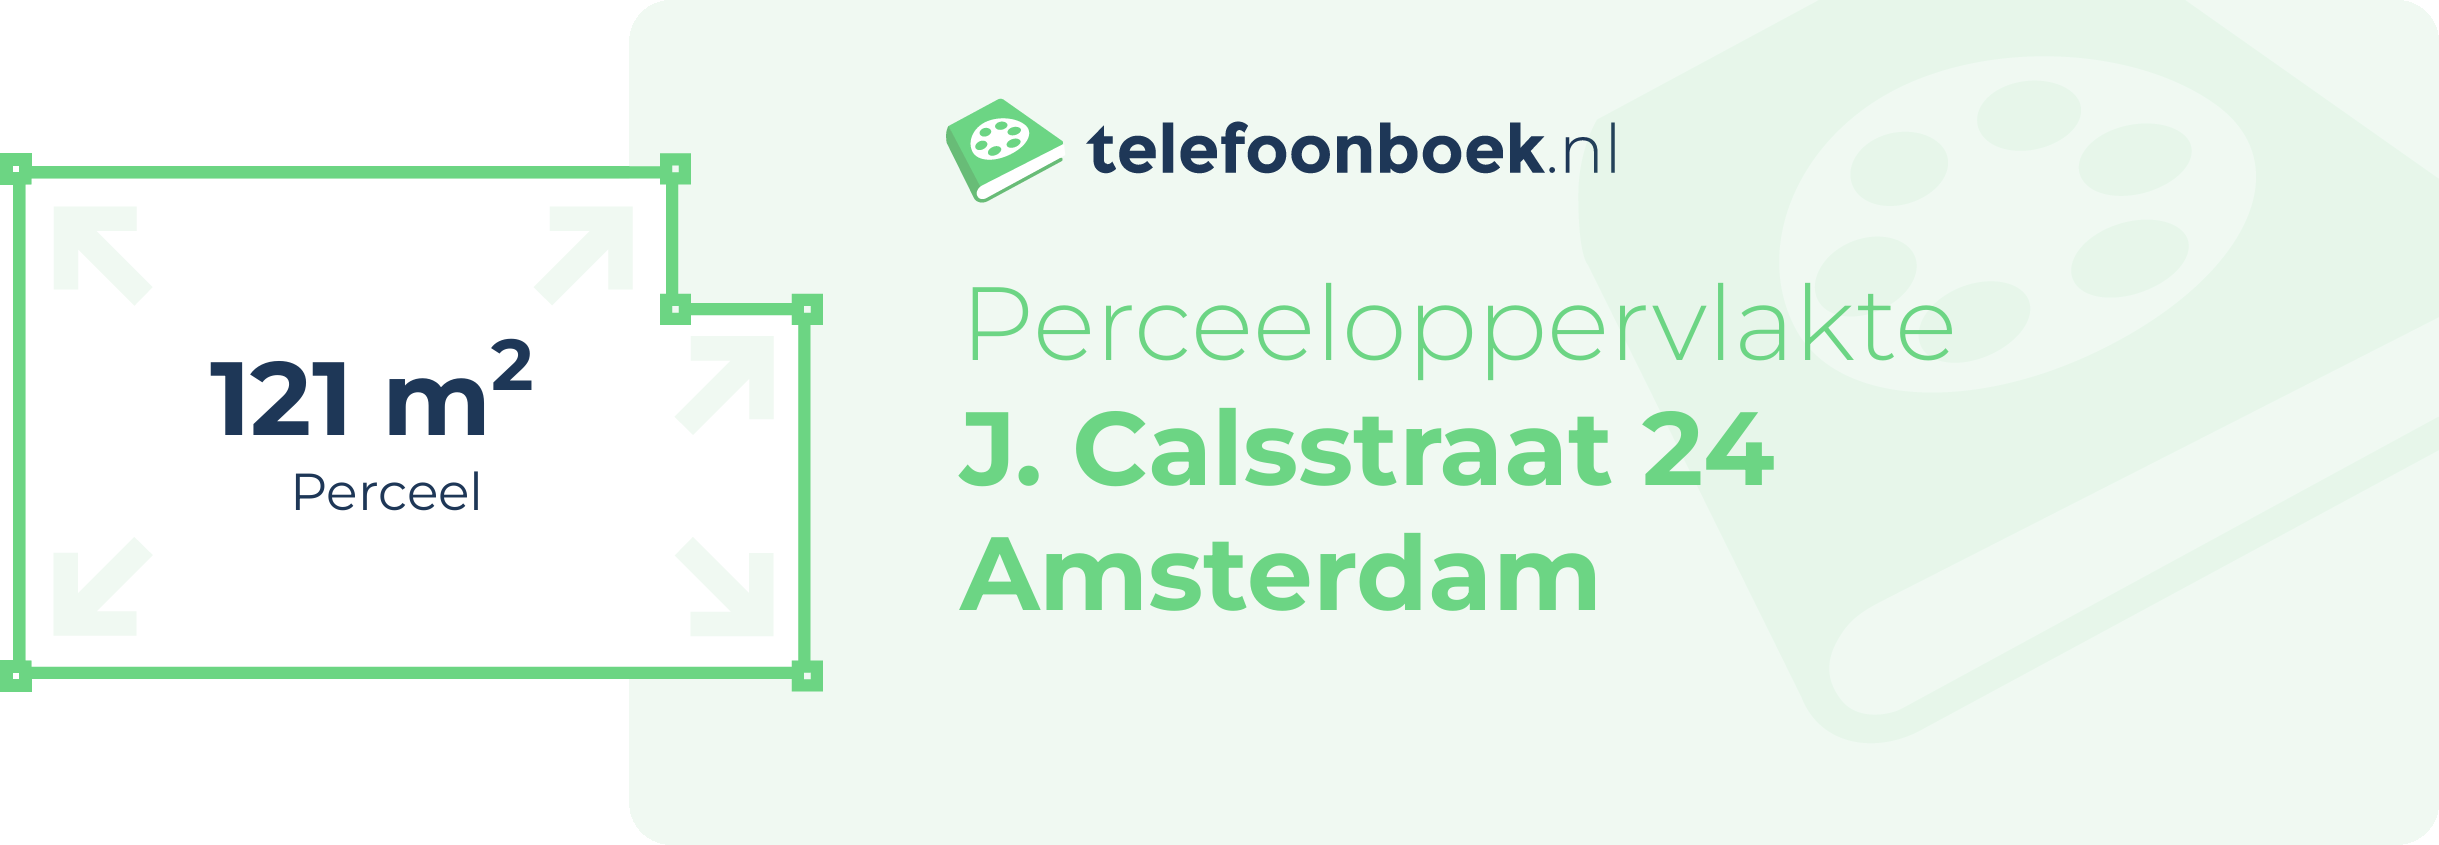 Perceeloppervlakte J. Calsstraat 24 Amsterdam